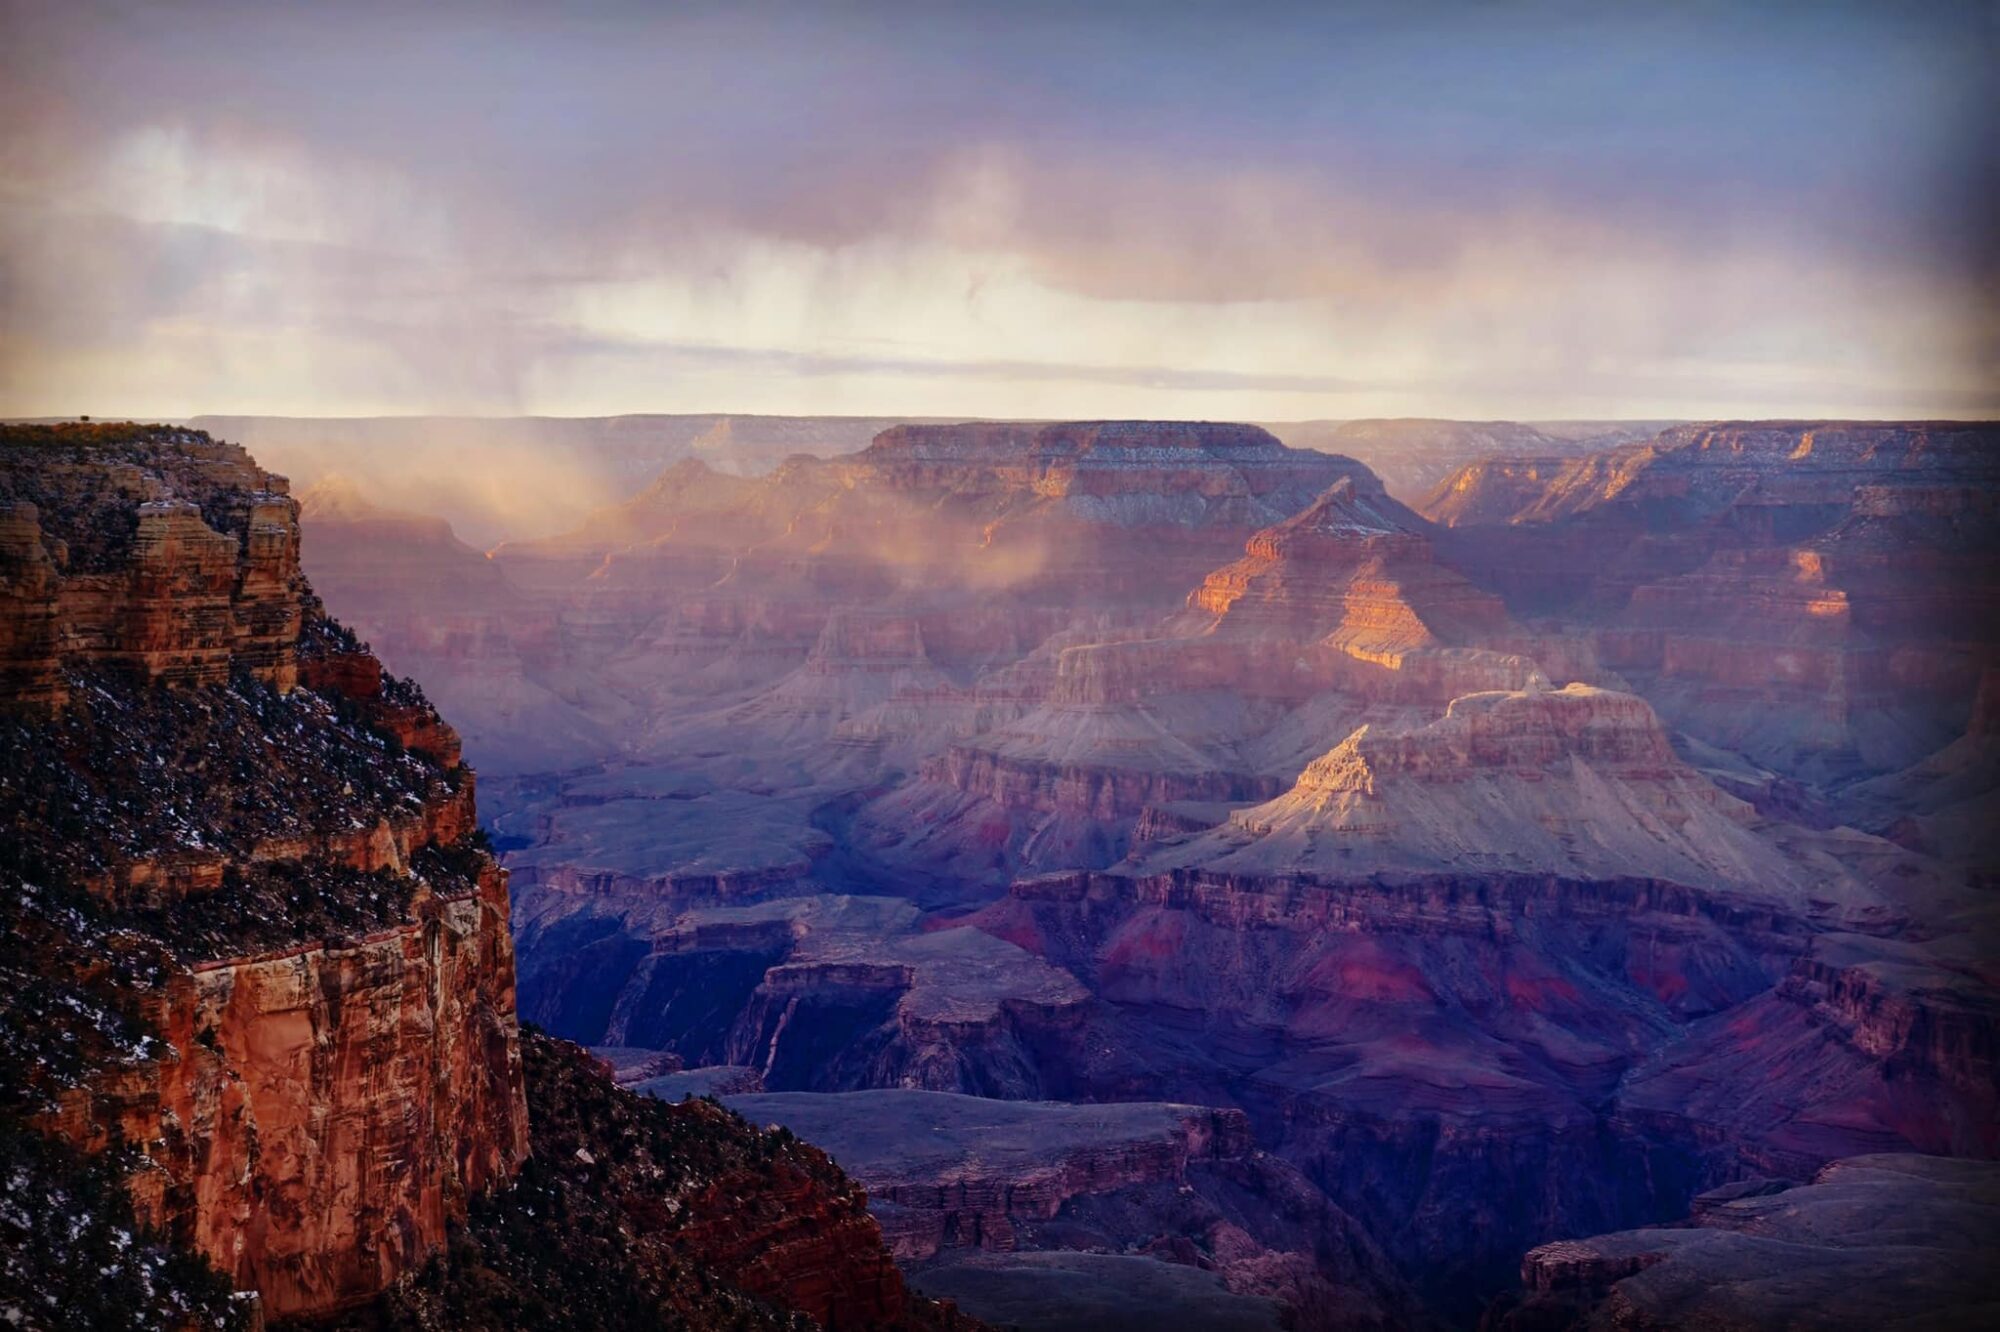 The Grand Canyon at dusk.